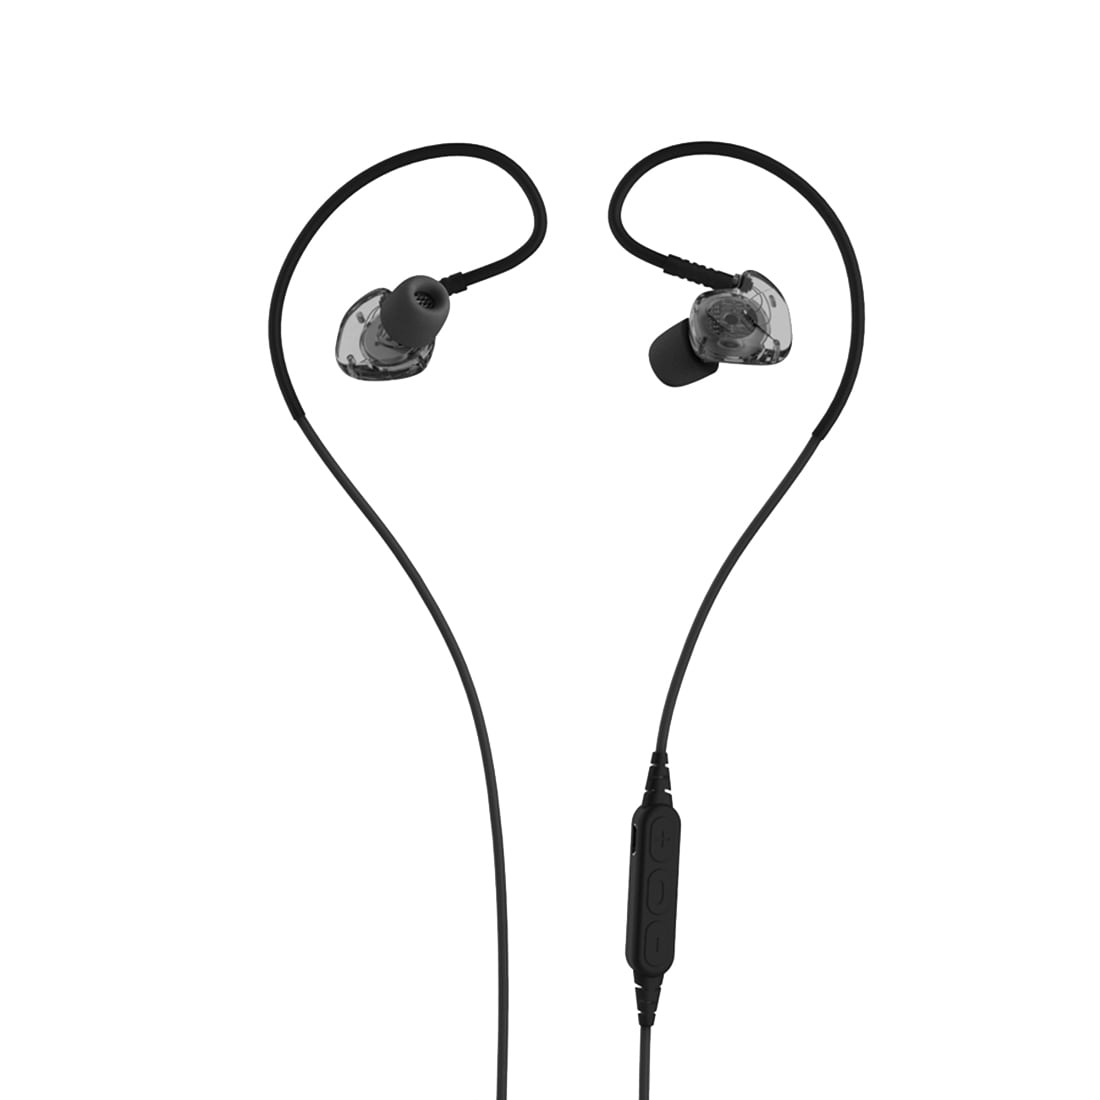 Sport Beat IPX5 kestävät Stereo Sport Bluetooth In-Ear kuulokkeet